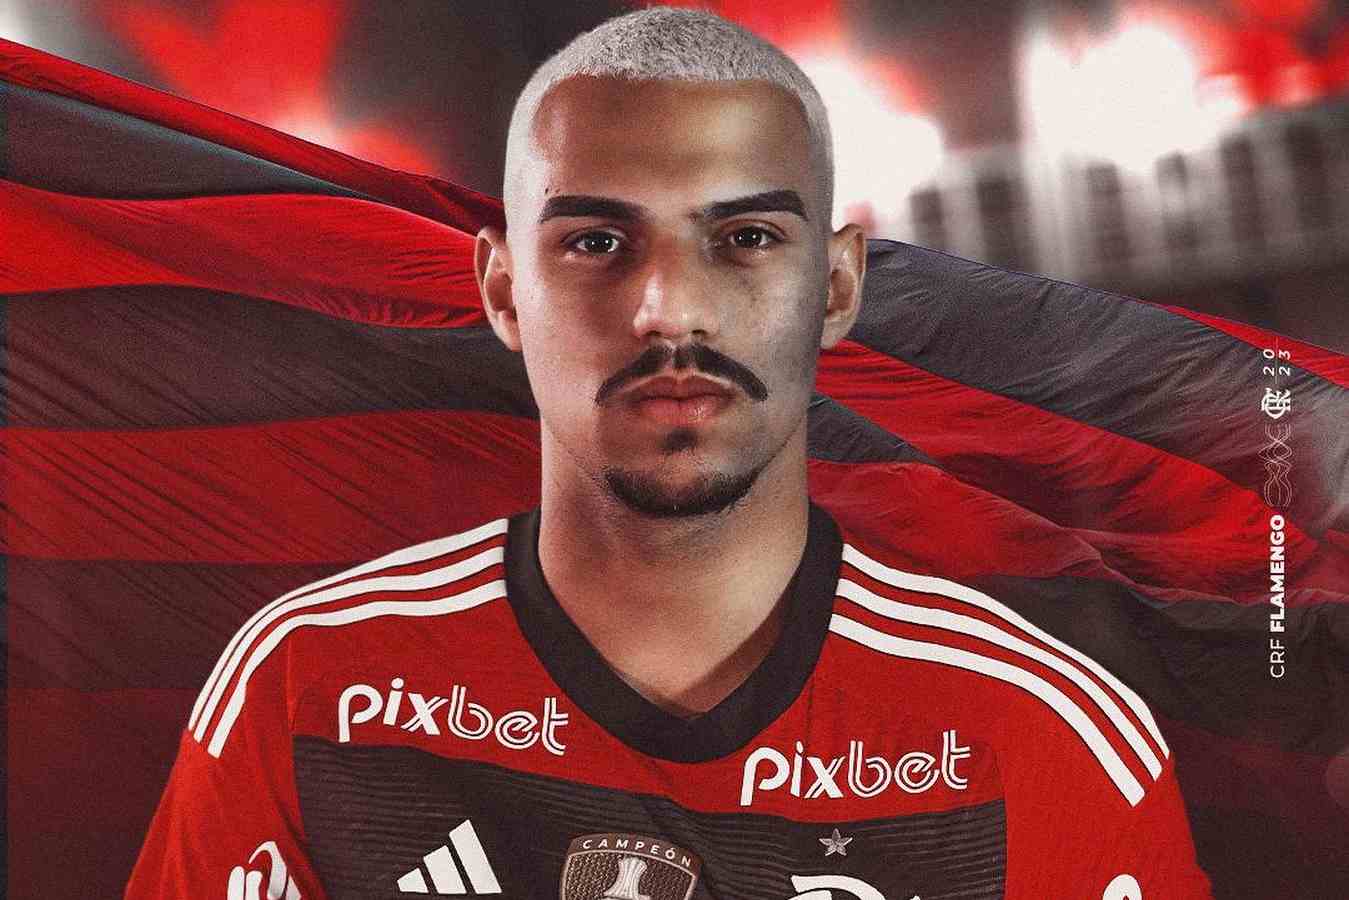 Flamengo e Pixbet acertam renovação - Foto: Facebook.com/FlamengoOficial